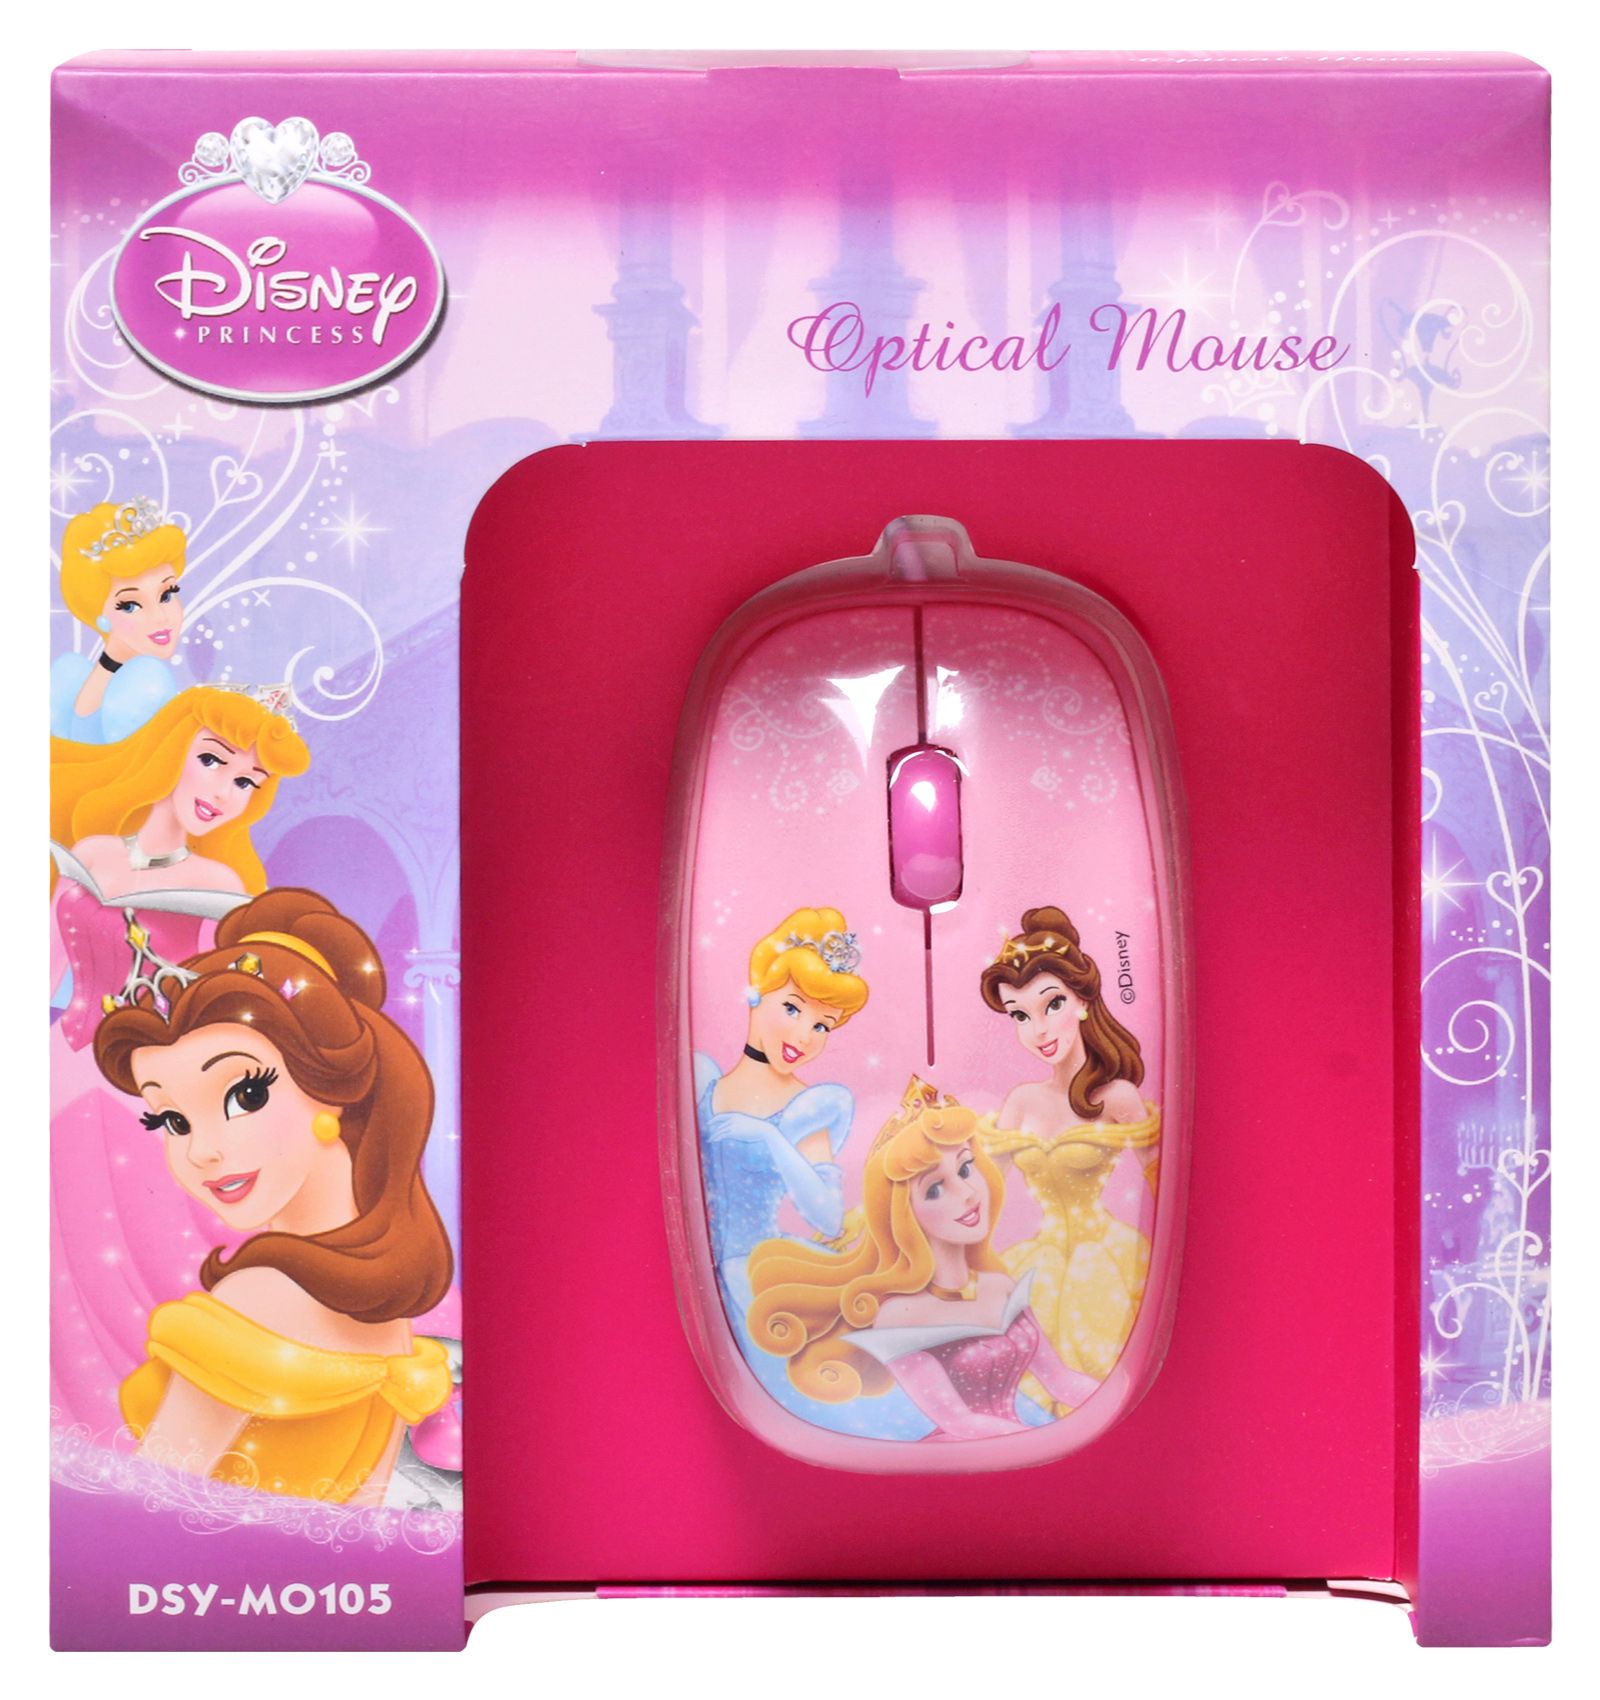 Disney Princess - Optical Mouse